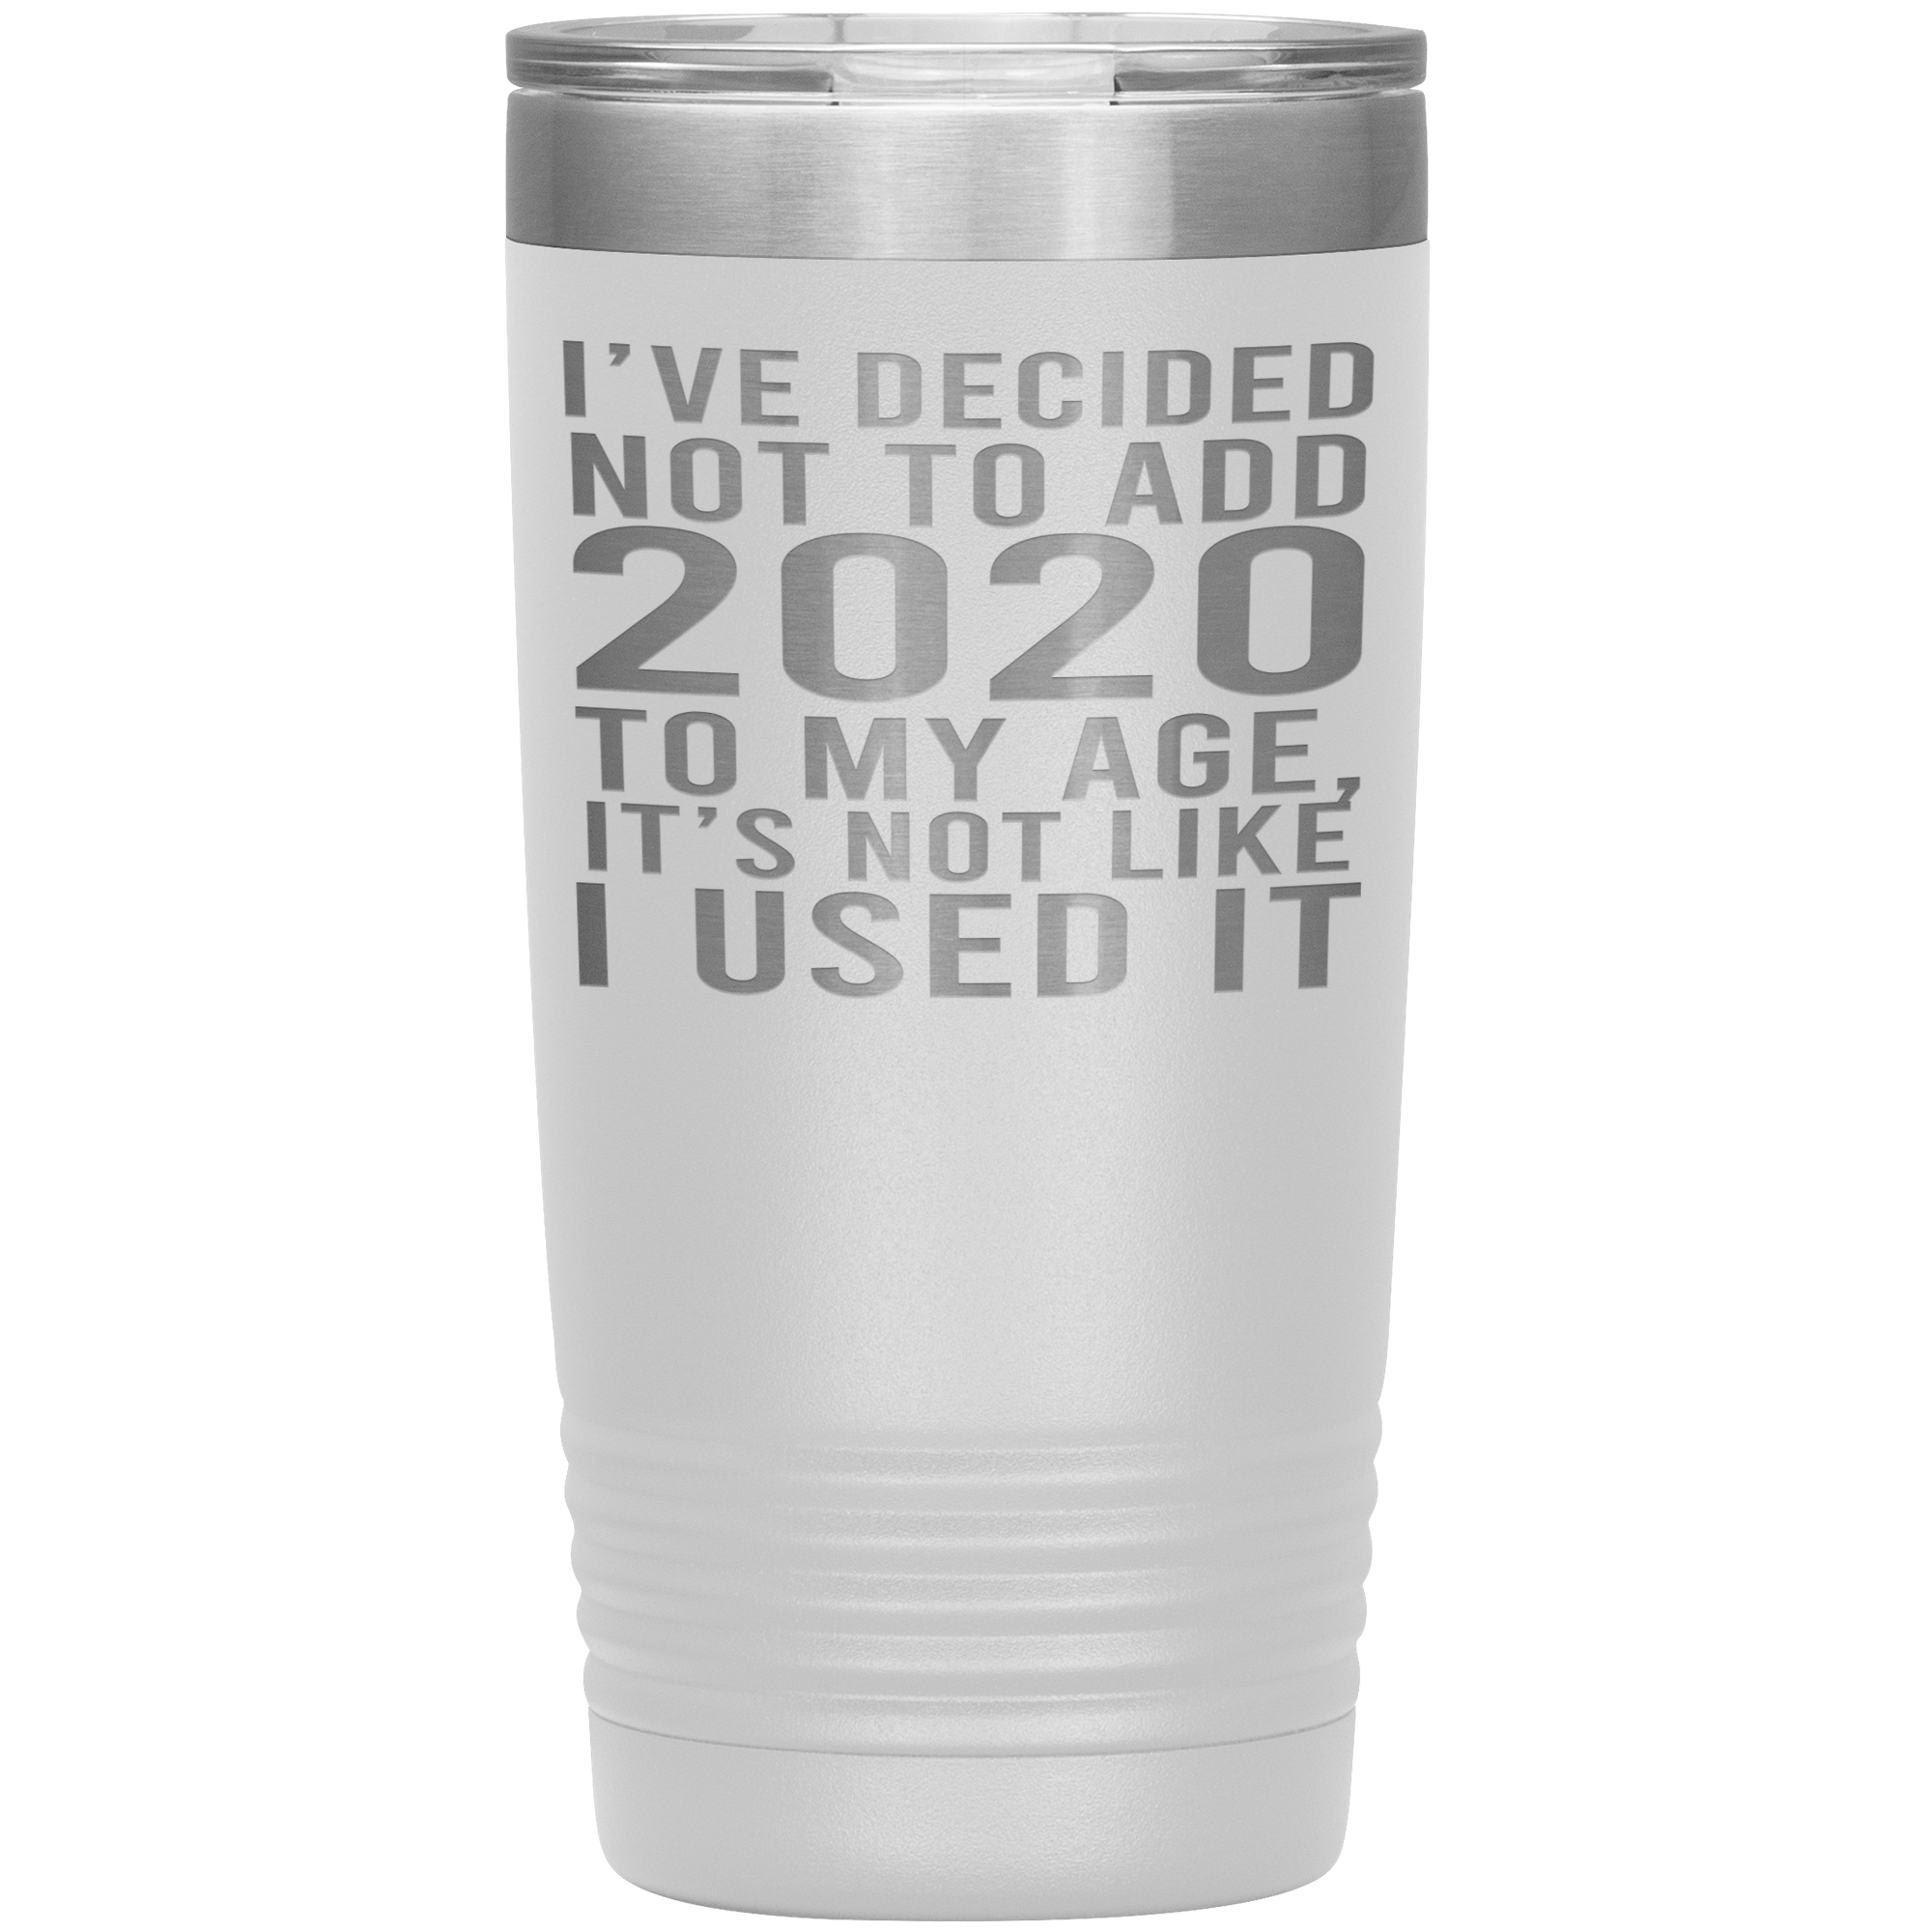 I HAVEN'T USED 2020 SO I WON'T ADD IT TO MY AGE - TUMBLER